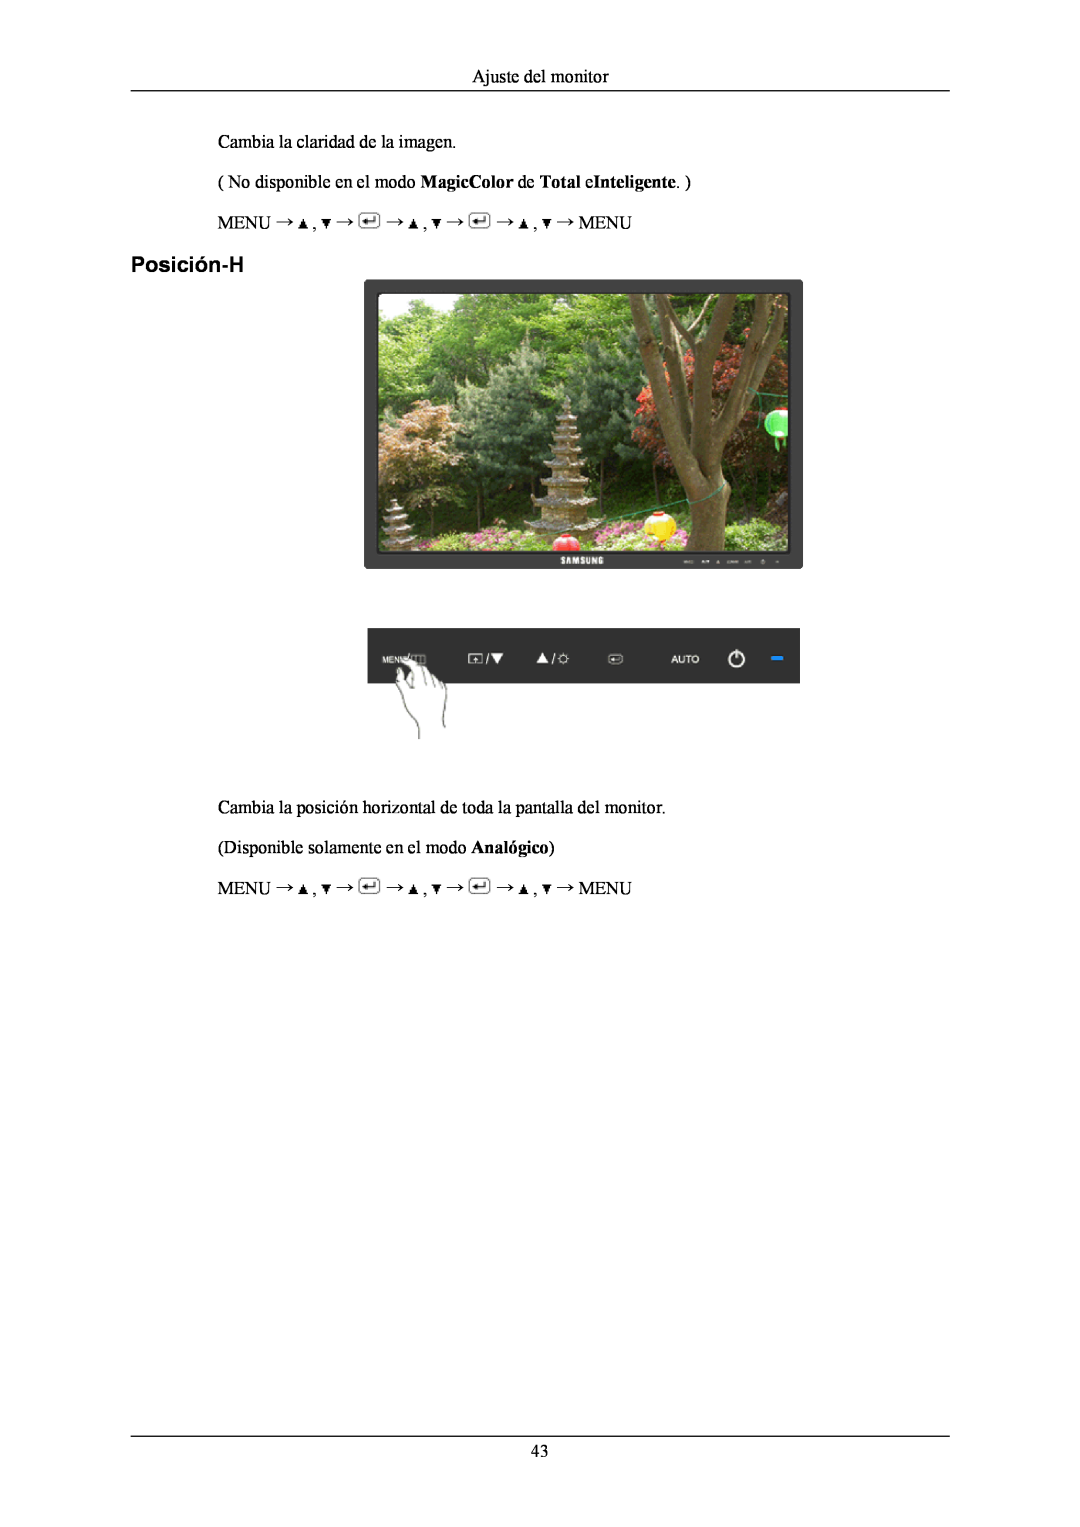 Samsung LS19MYNKBB/EDC manual Posición-H, Ajuste del monitor Cambia la claridad de la imagen, Menu → , → → , → → , → Menu 